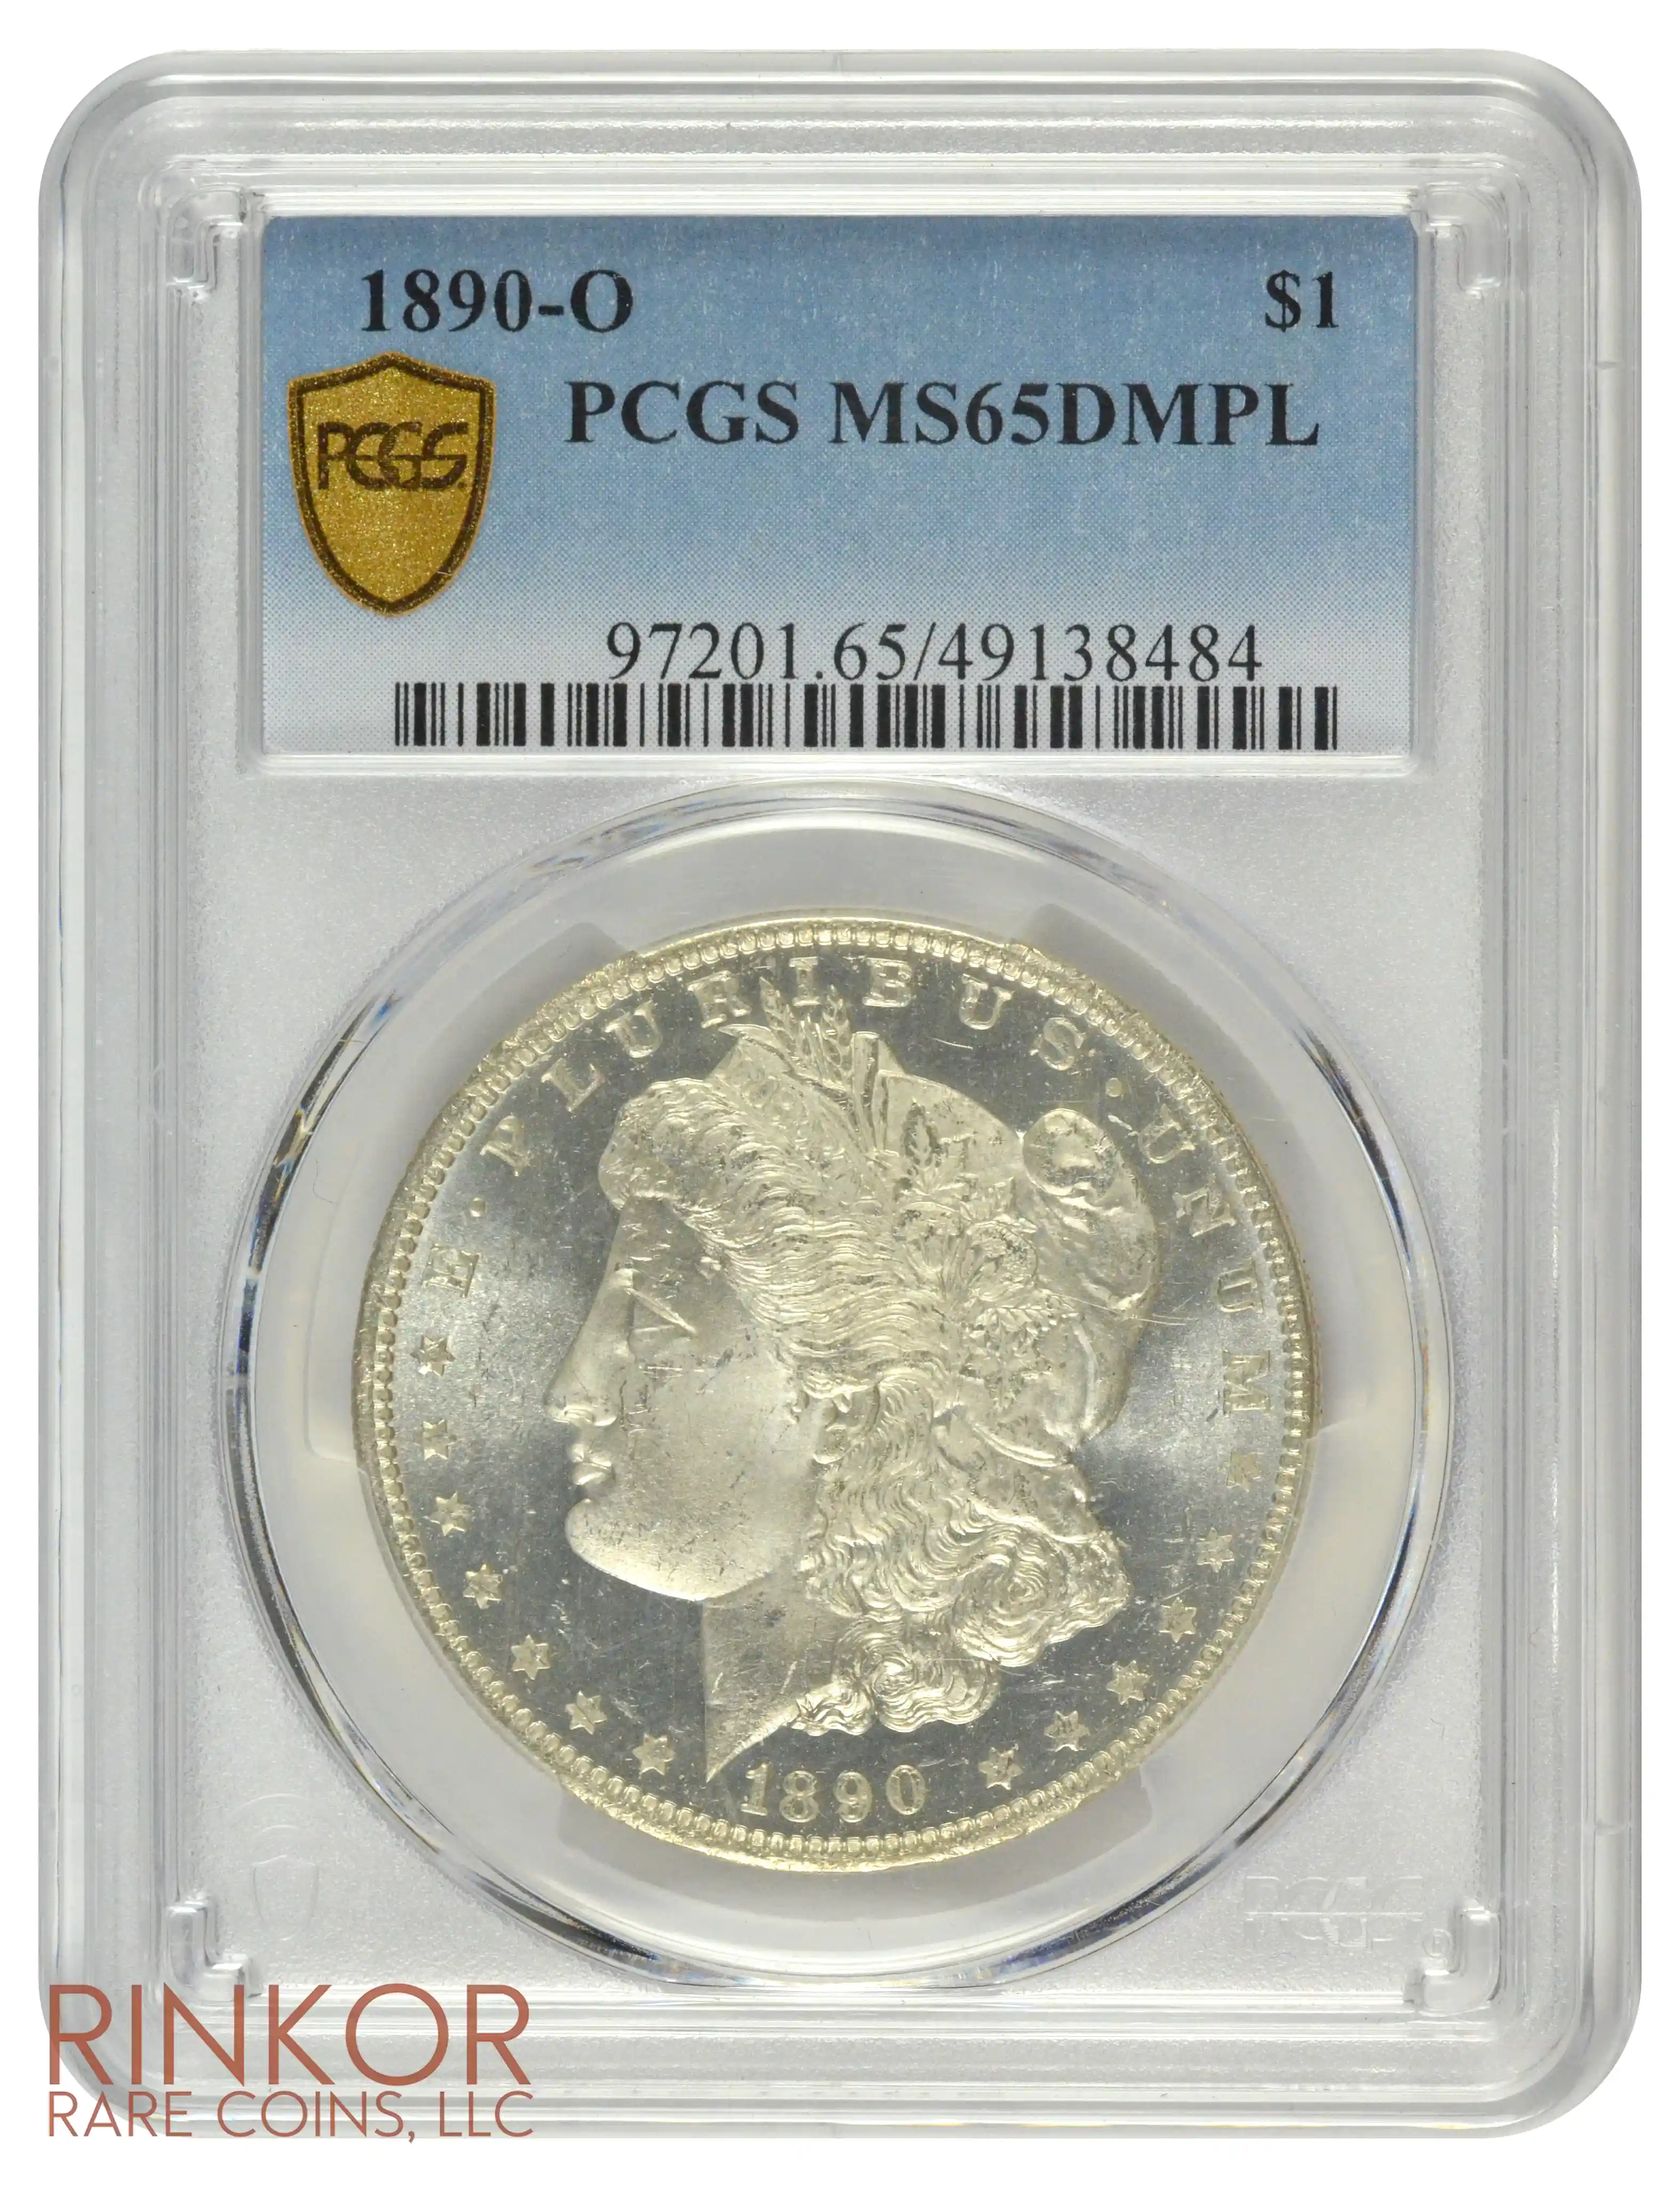 1890-O $1 PCGS MS 65 DMPL